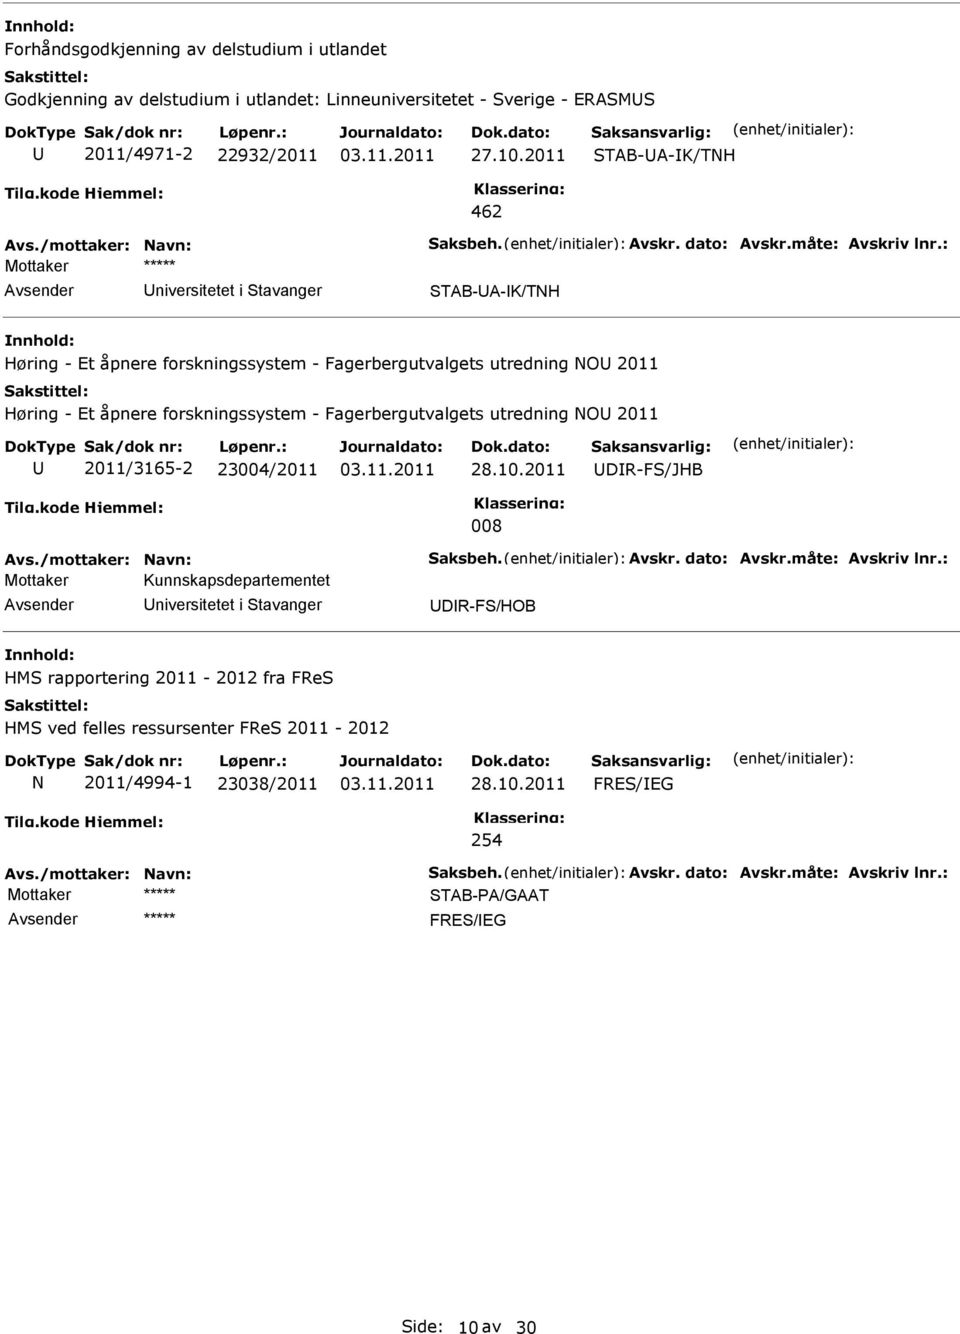 forskningssystem - Fagerbergutvalgets utredning NO 2011 2011/3165-2 23004/2011 28.10.